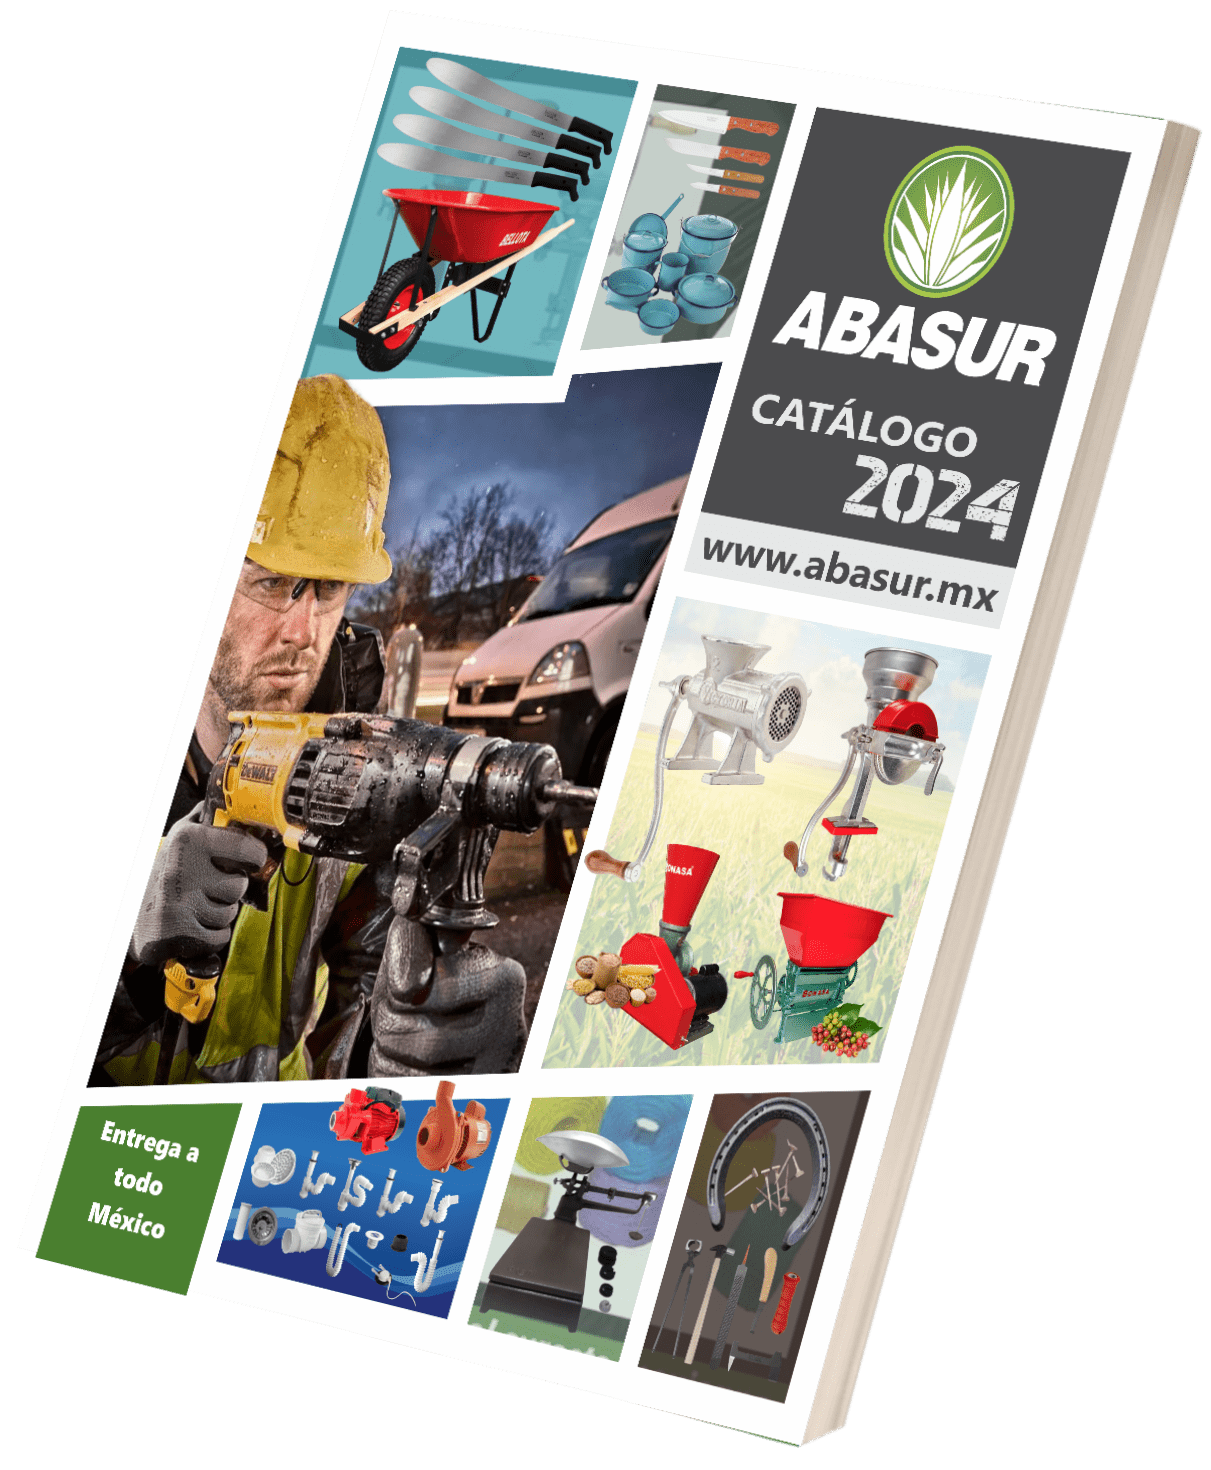 Catalogo ABASUR 2024 - Descargar catálogo